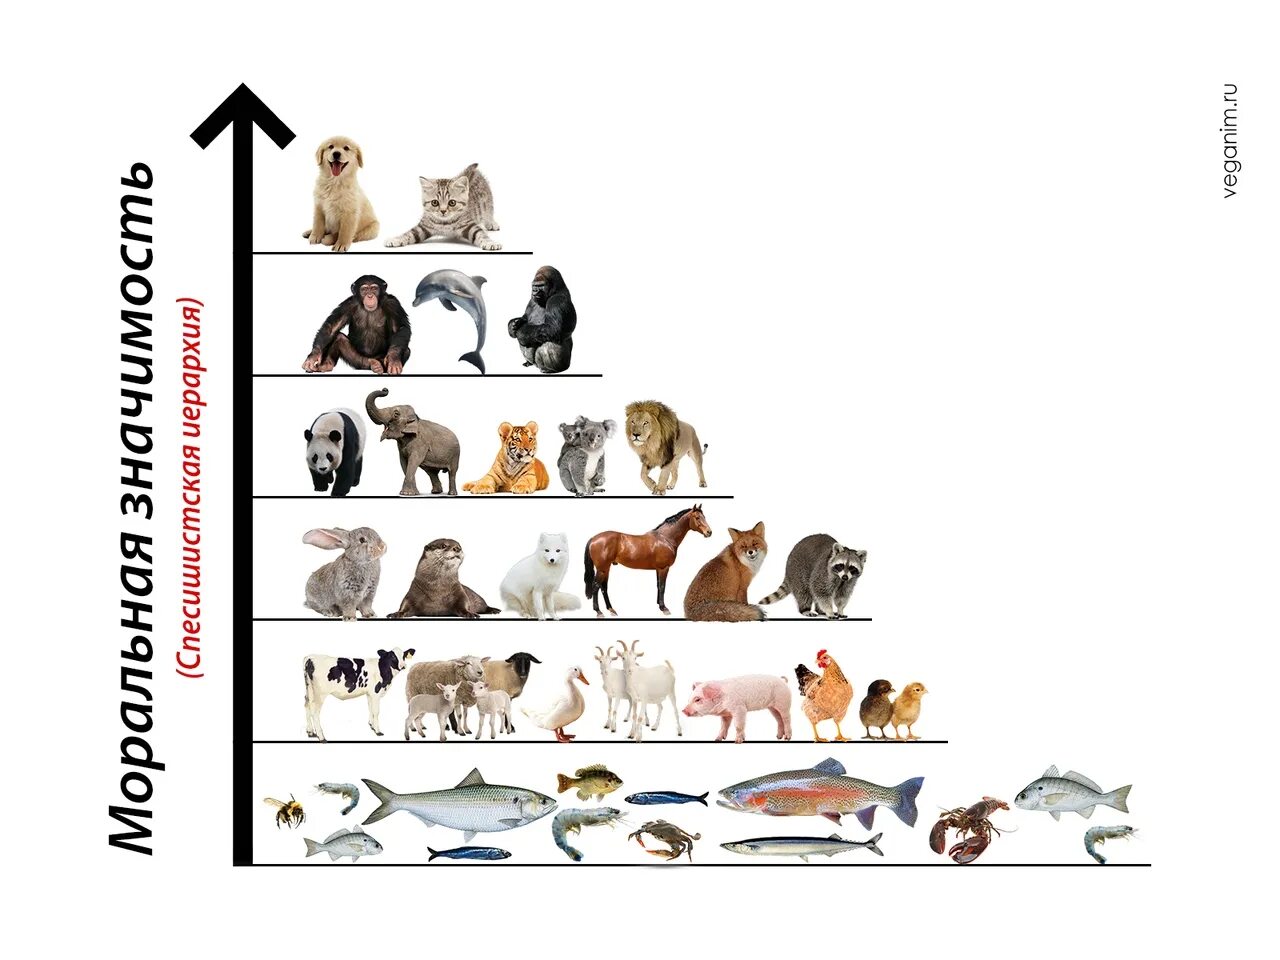 Представление ученых зверей. Иерархия животных. Спесишизм. Животные с сложной иерархией. Виды иерархии у животных.